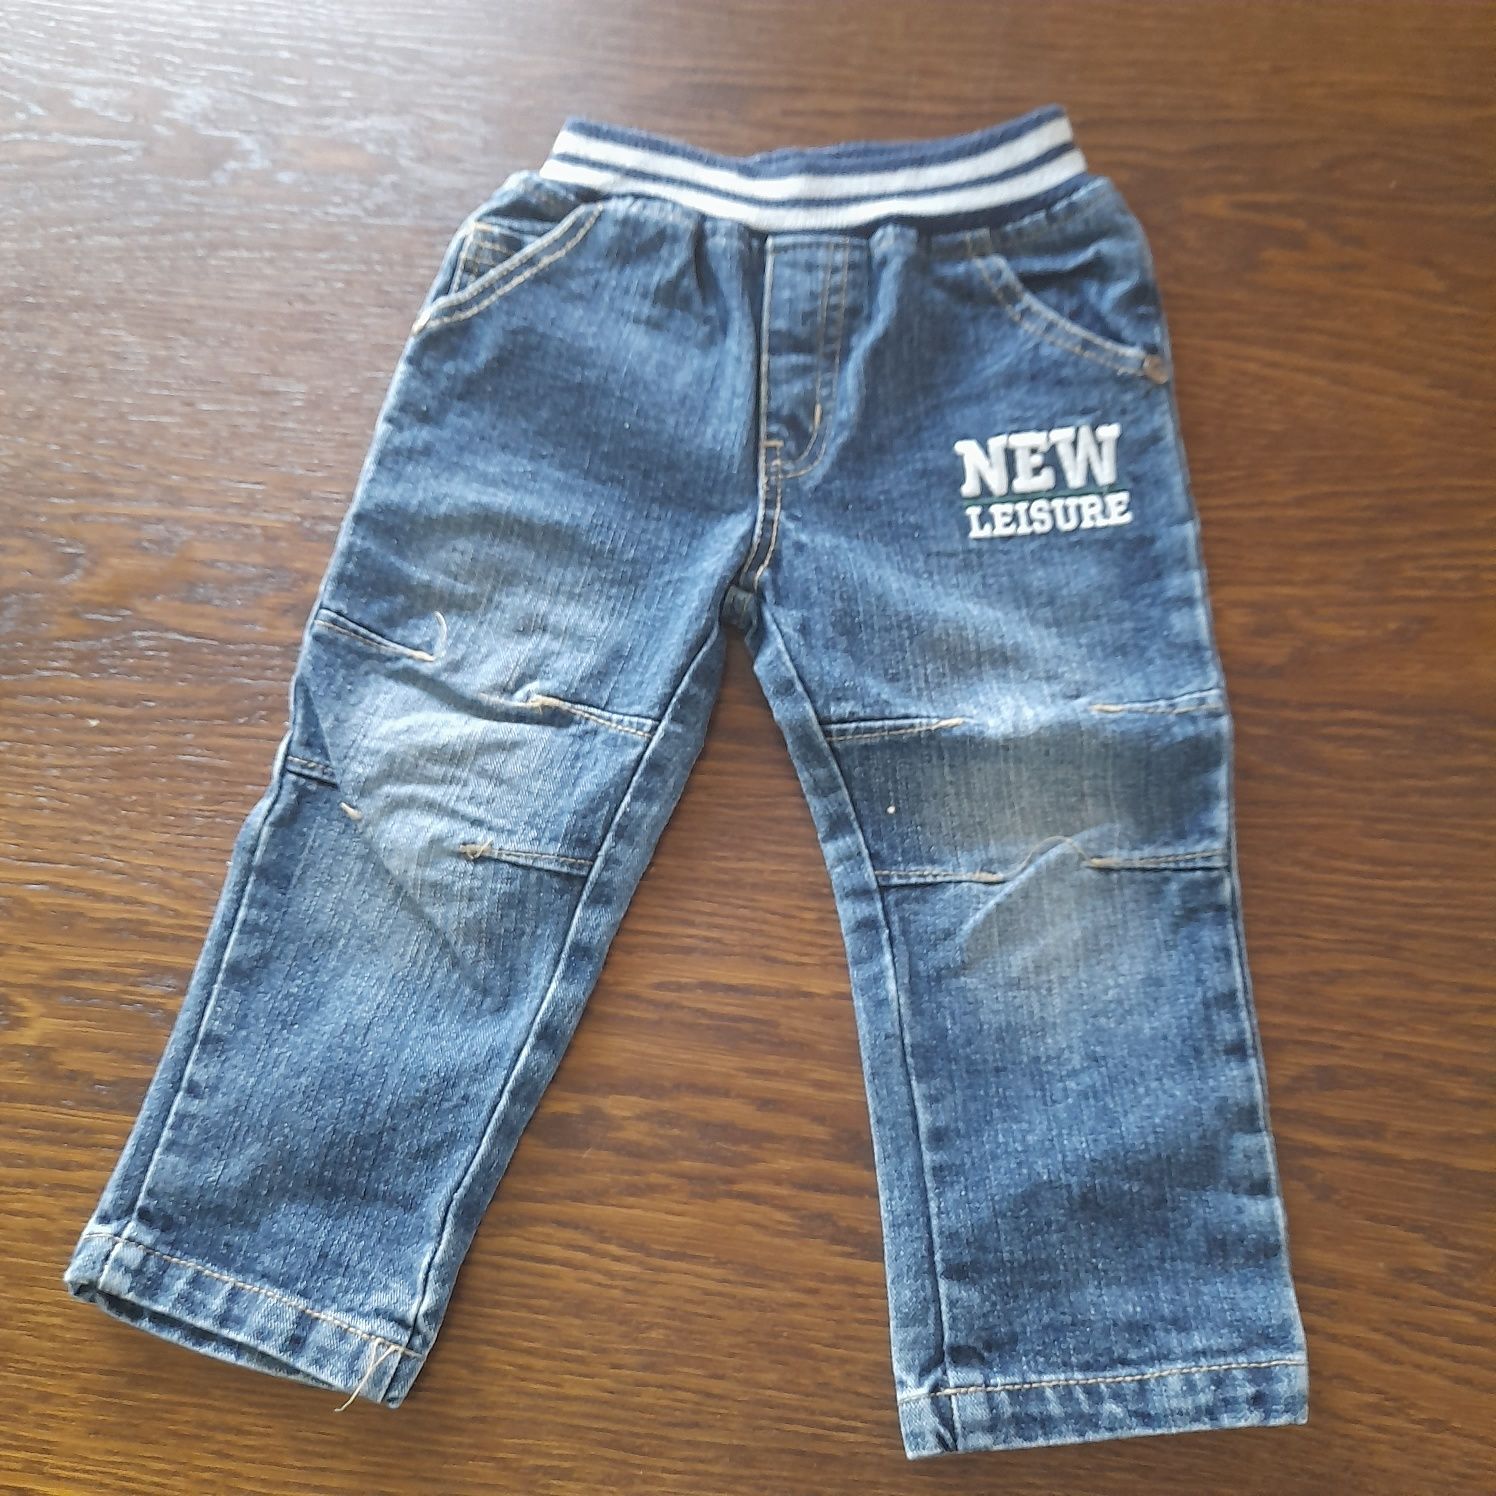 Paka/zestaw: 4 sztuki jeansów/ spodni (2 z szelkami) dla chłopca. Rozm